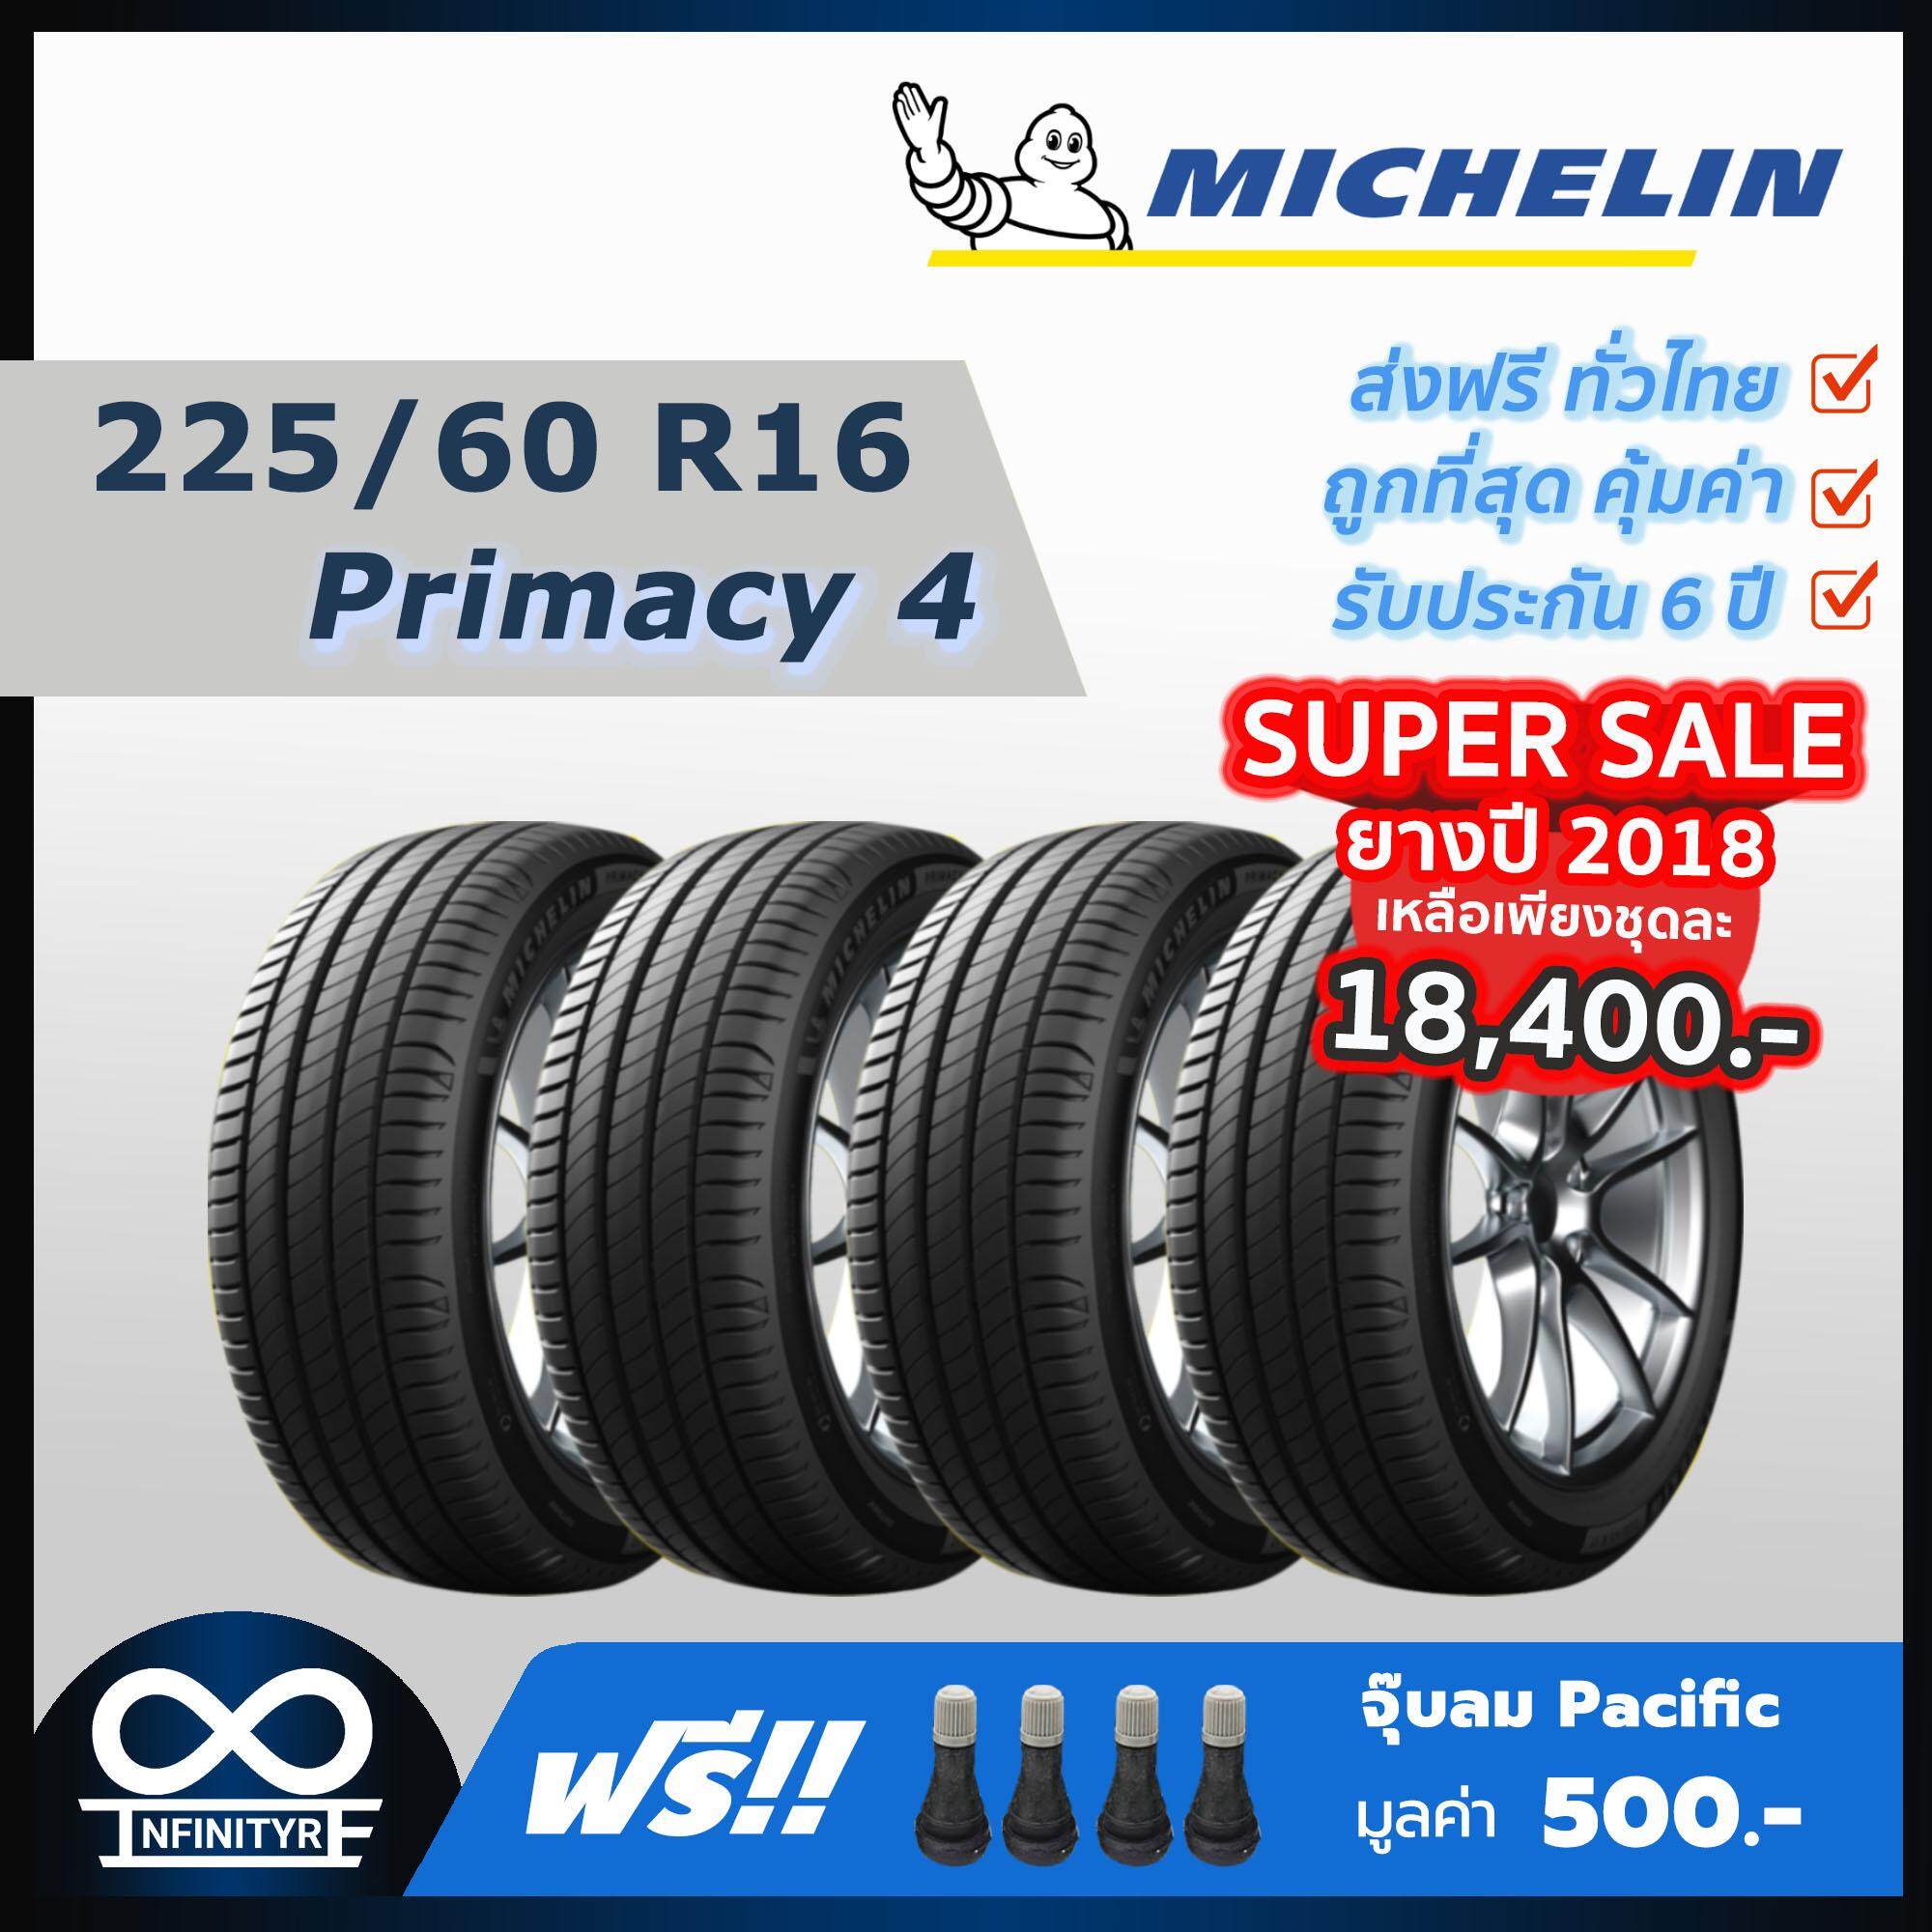 ประกันภัย รถยนต์ แบบ ผ่อน ได้ ภูเก็ต 225/60R16 Michelin มิชลิน รุ่น Primacy 4 (ปี2018 ลดราคาจัดหนัก) 4เส้น ฟรี  จุ๊บลมPacific เกรดพรีเมี่ยม